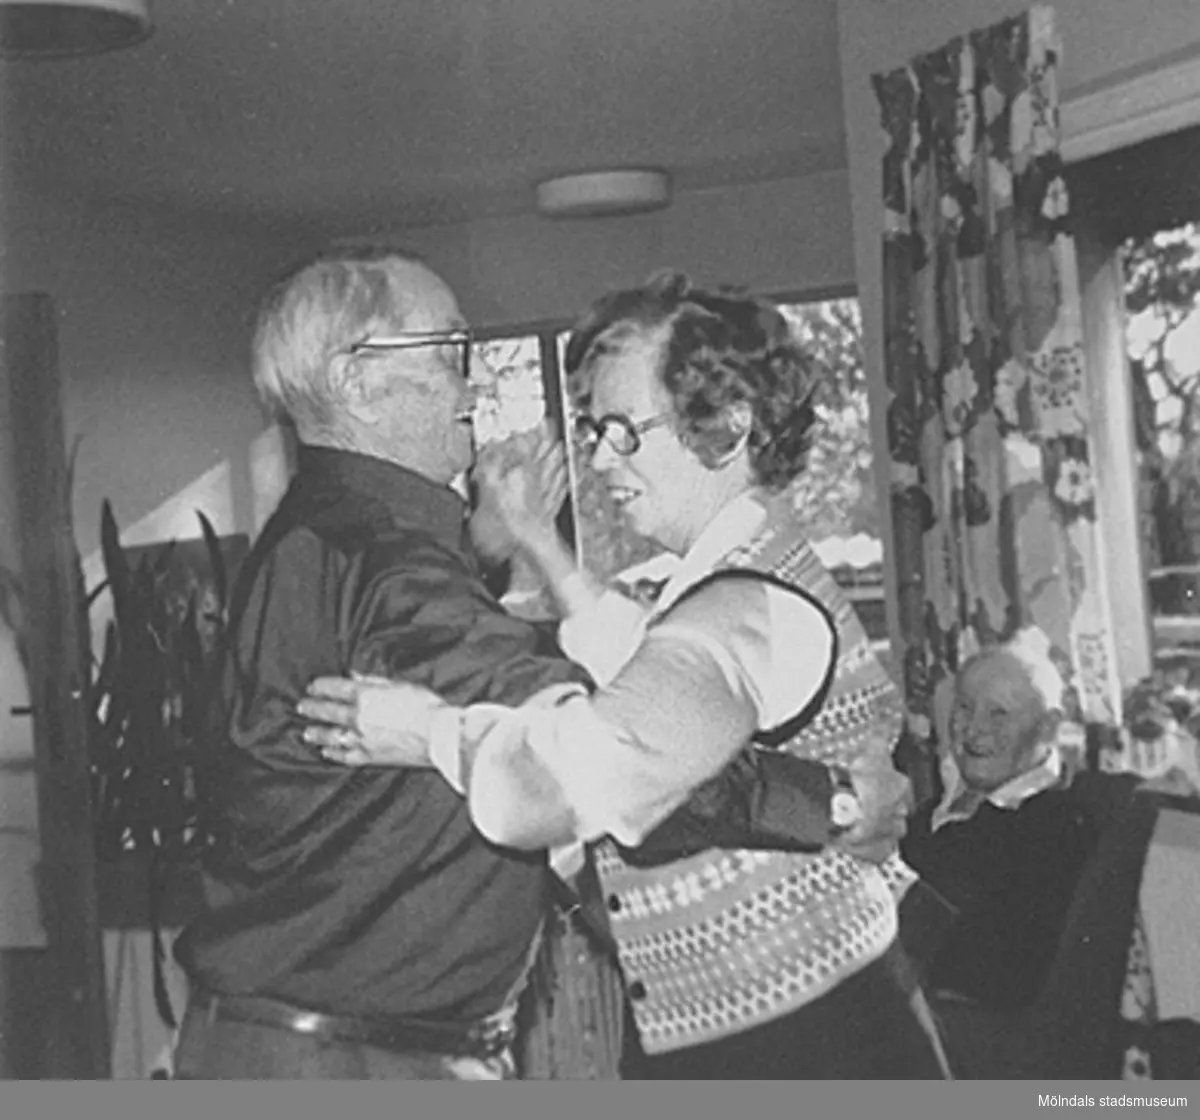 Dans på Brattåshemmet, 1980-tal. Per Pettersson "Knipan", Kållered dansar med politikern Alma Persson, Livered. I bakgrunden till höger ses Alfred Mattsson, Bölet.